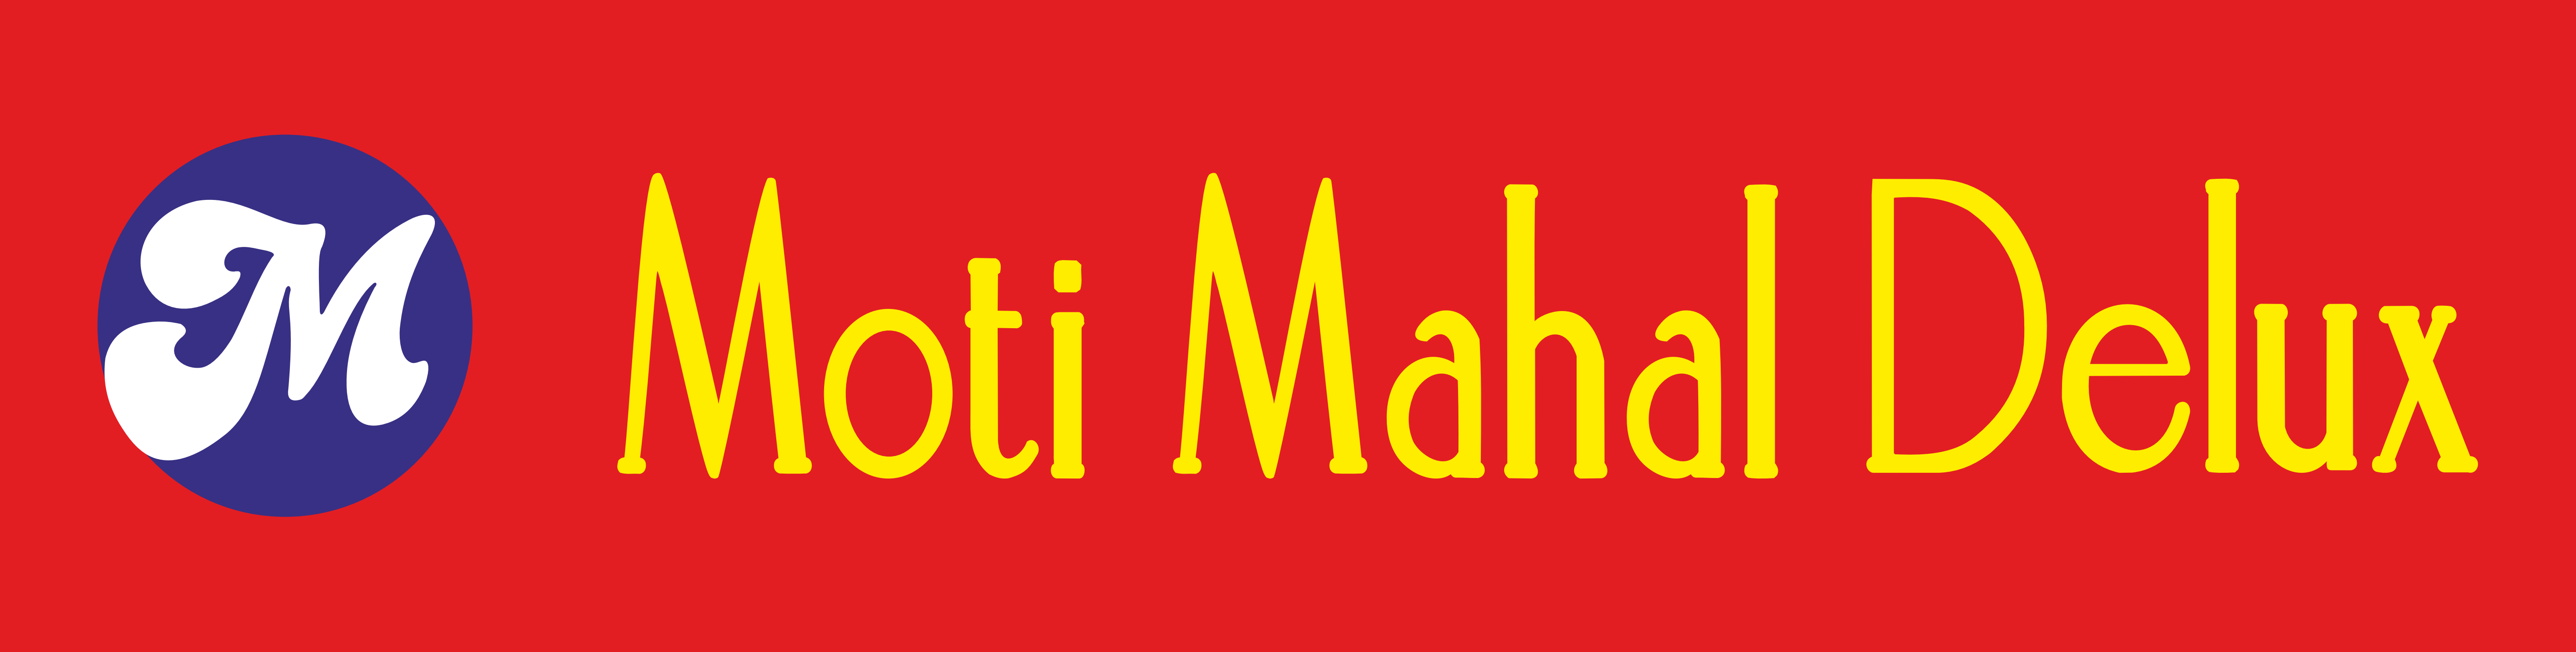 MOTI MAHAL